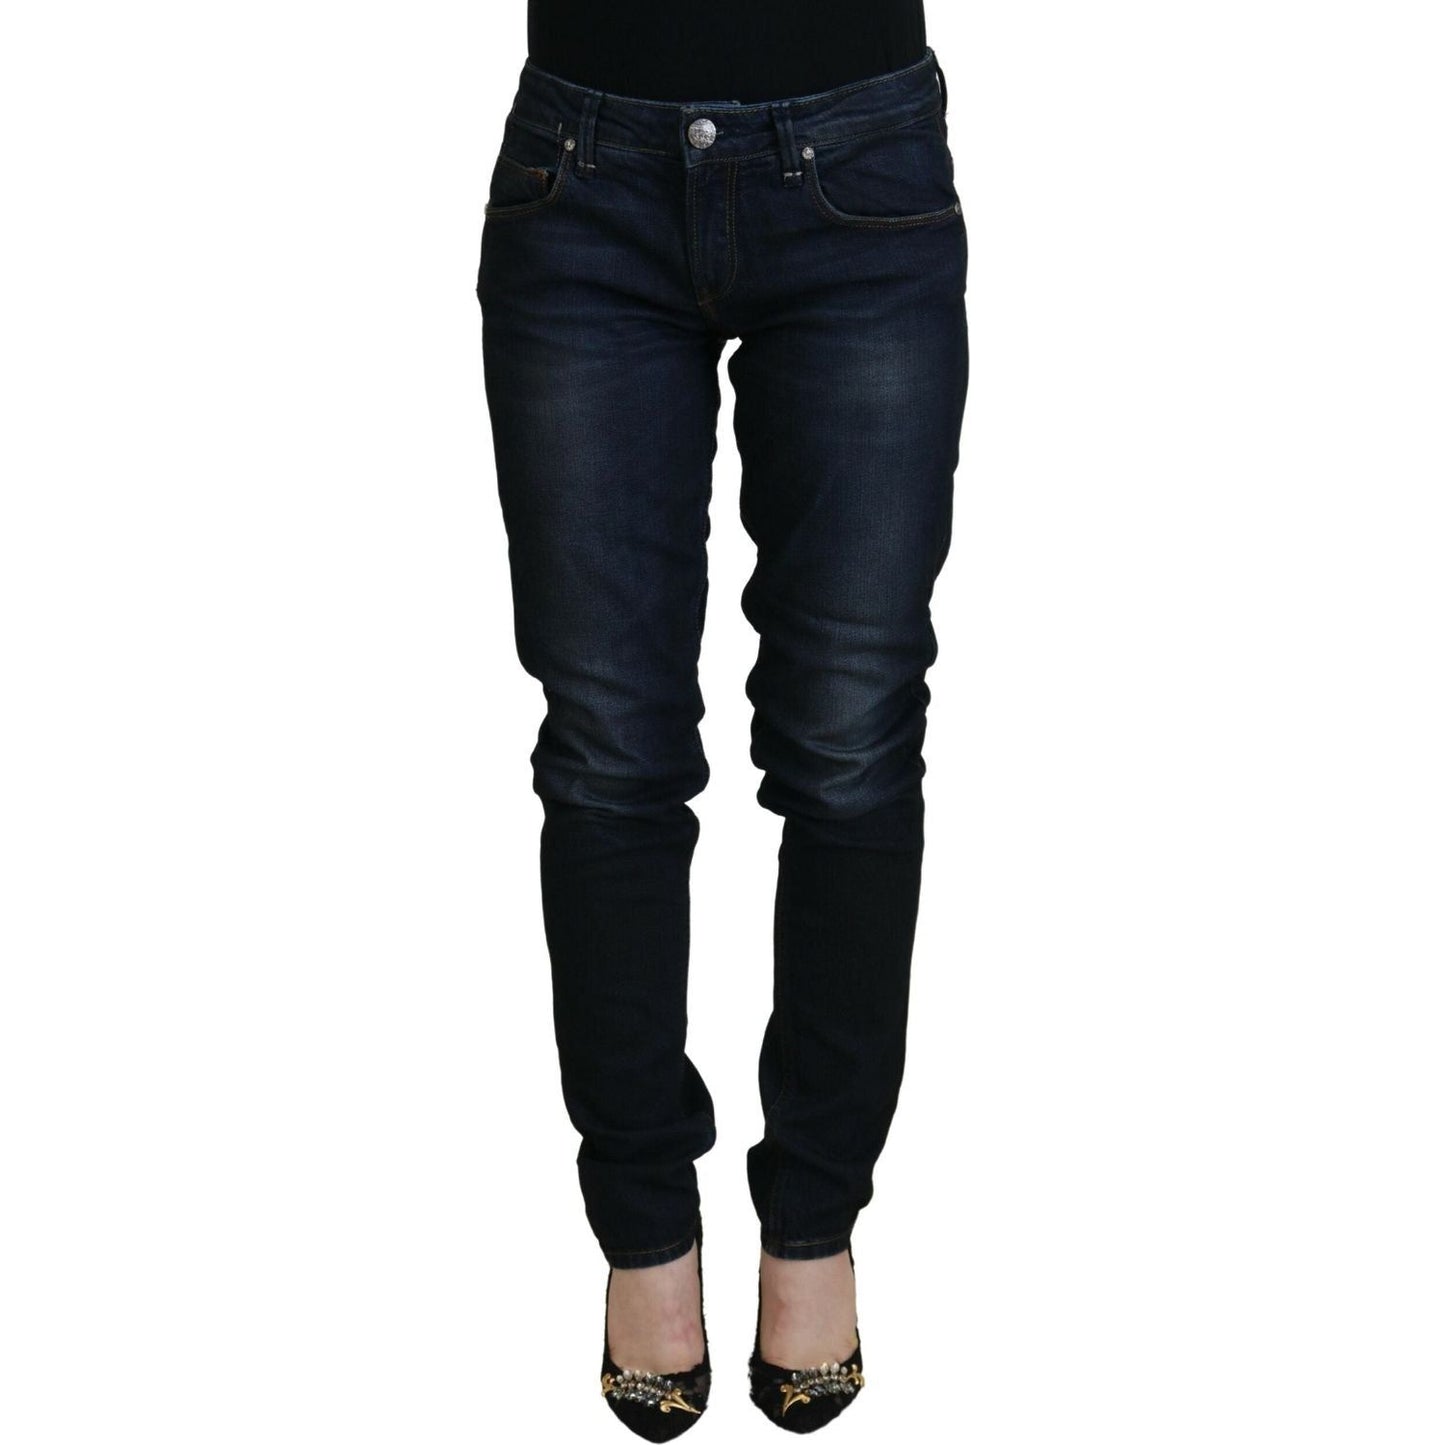 Acht Chic Low Waist Denim Skinny Jeans blue-cotton-skinny-low-waist-women-casual-denim-jeans